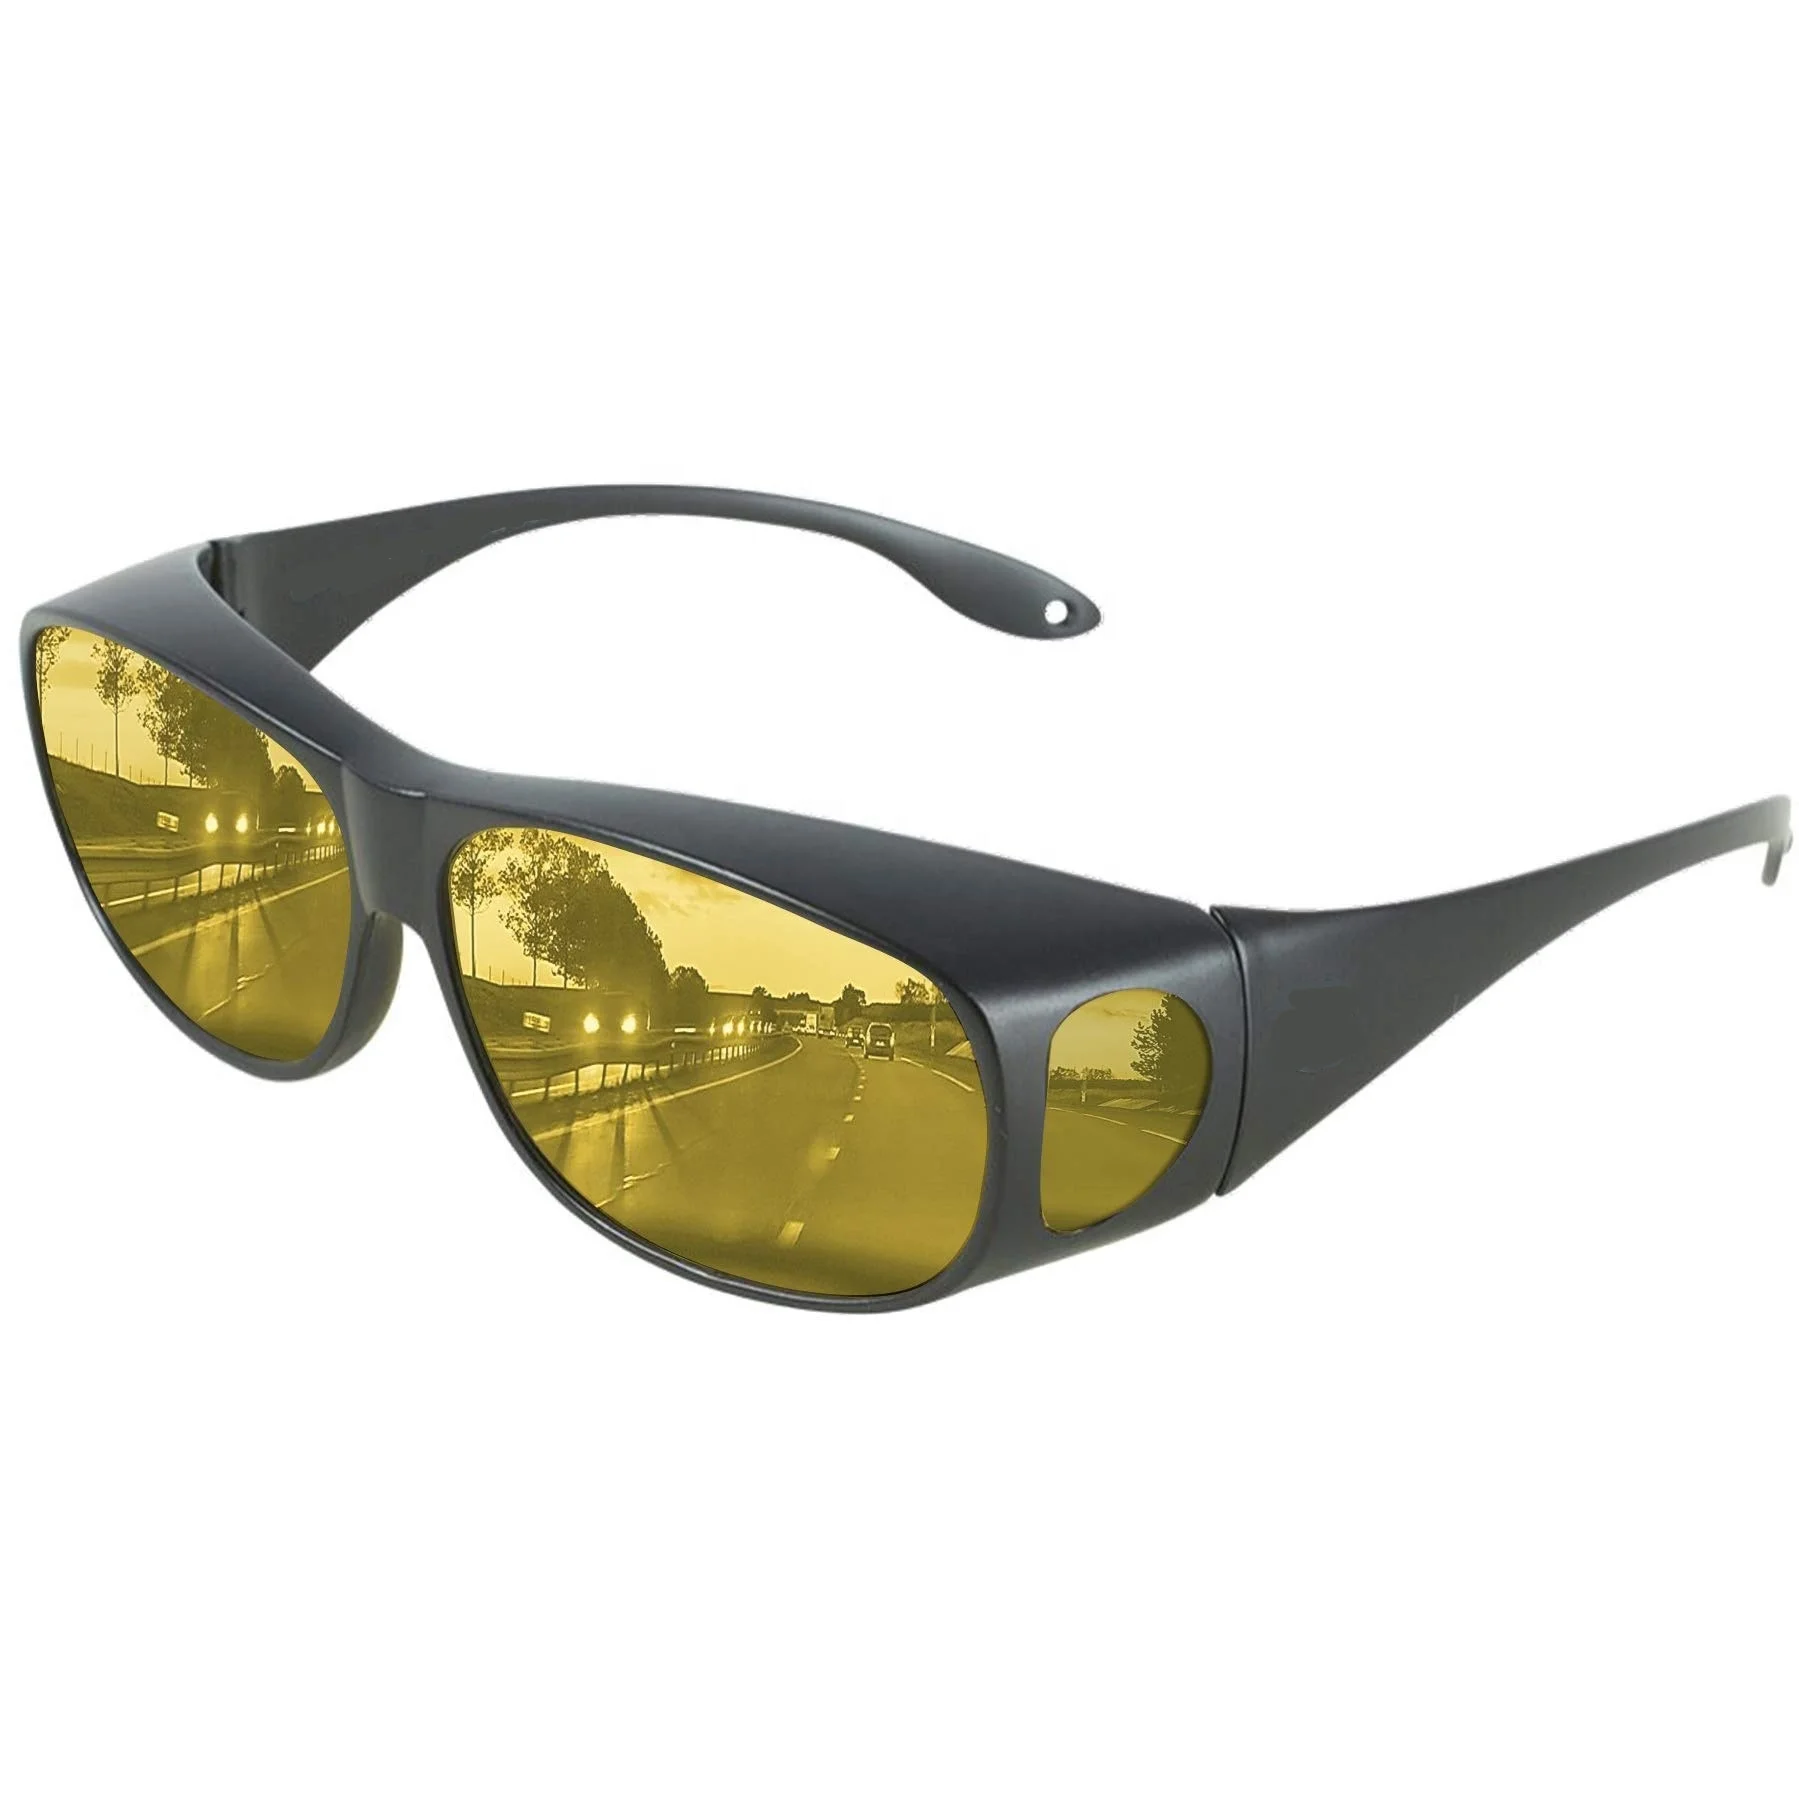 

Dll3009 Day Night Driving Glasses Polarized Fashion Sunglasses For Men Women Anti Glare Fit Prescription Glasses